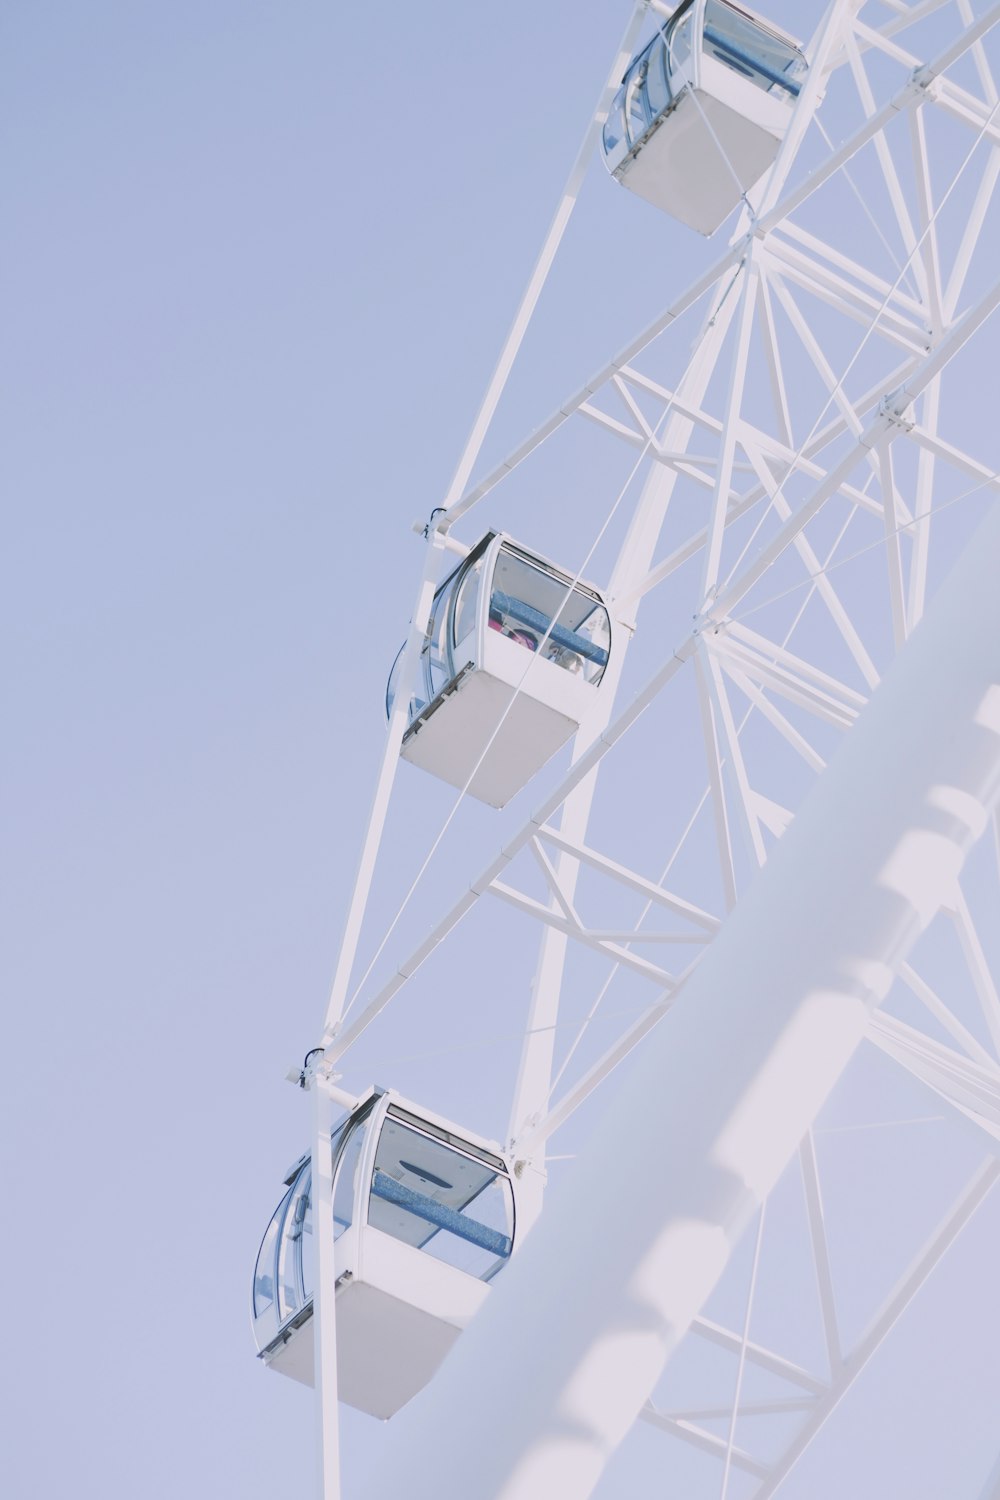 a ferris wheel is shown against a blue sky